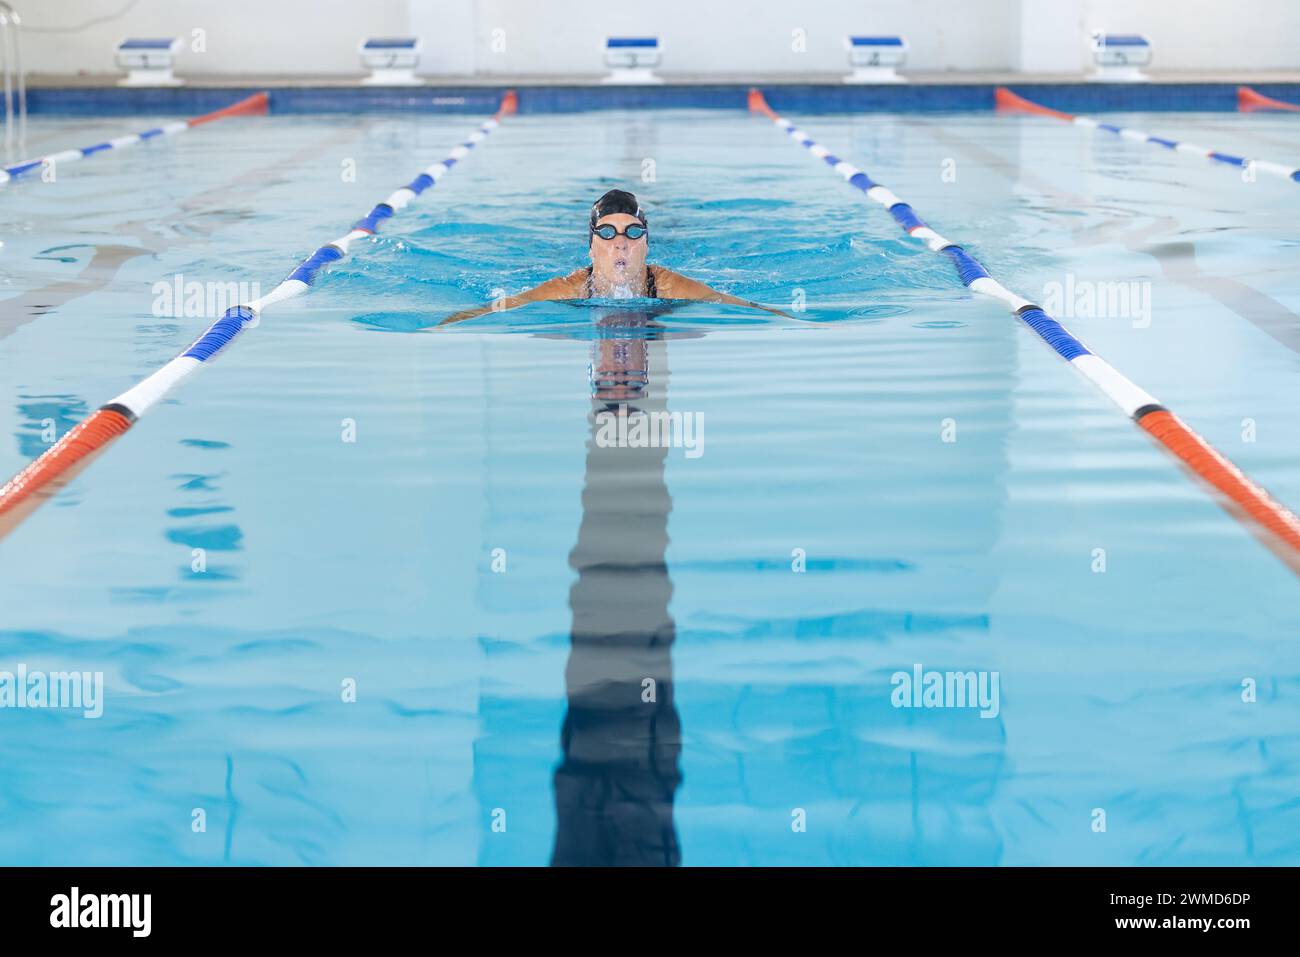 Athlète nageuse caucasienne nageant dans une piscine, avec espace de copie Banque D'Images